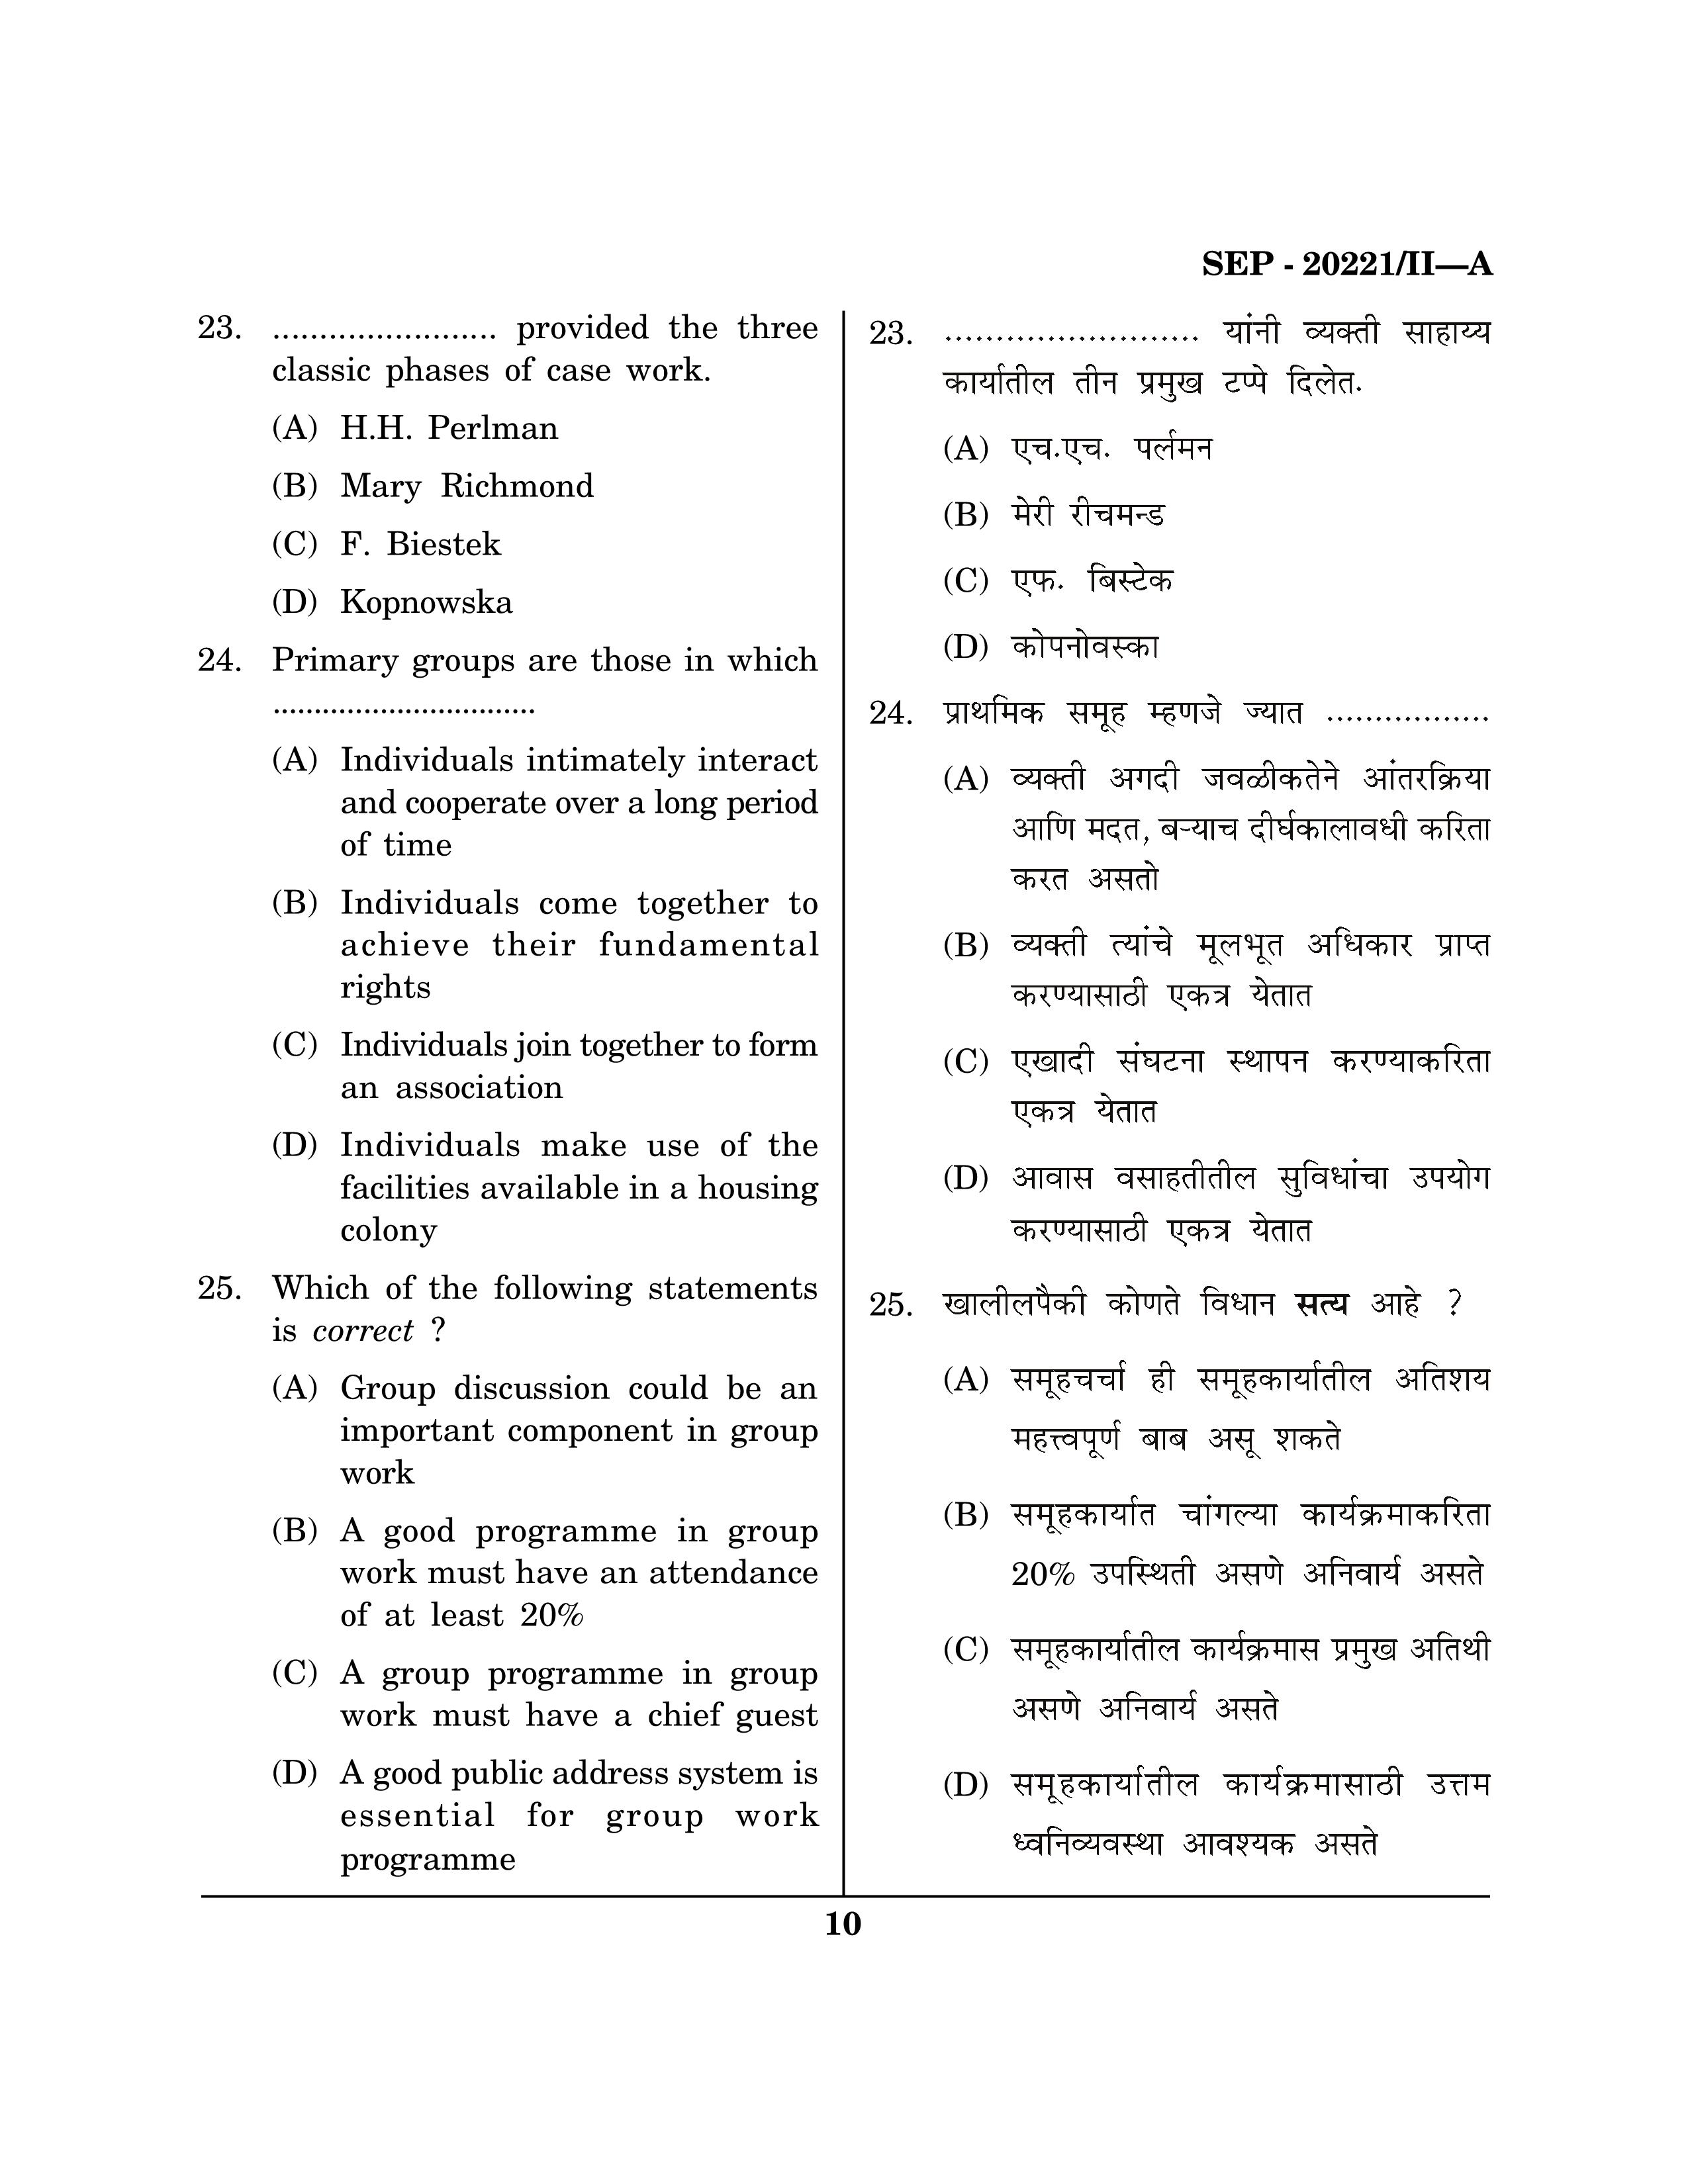 Maharashtra SET Social Work Exam Question Paper September 2021 9